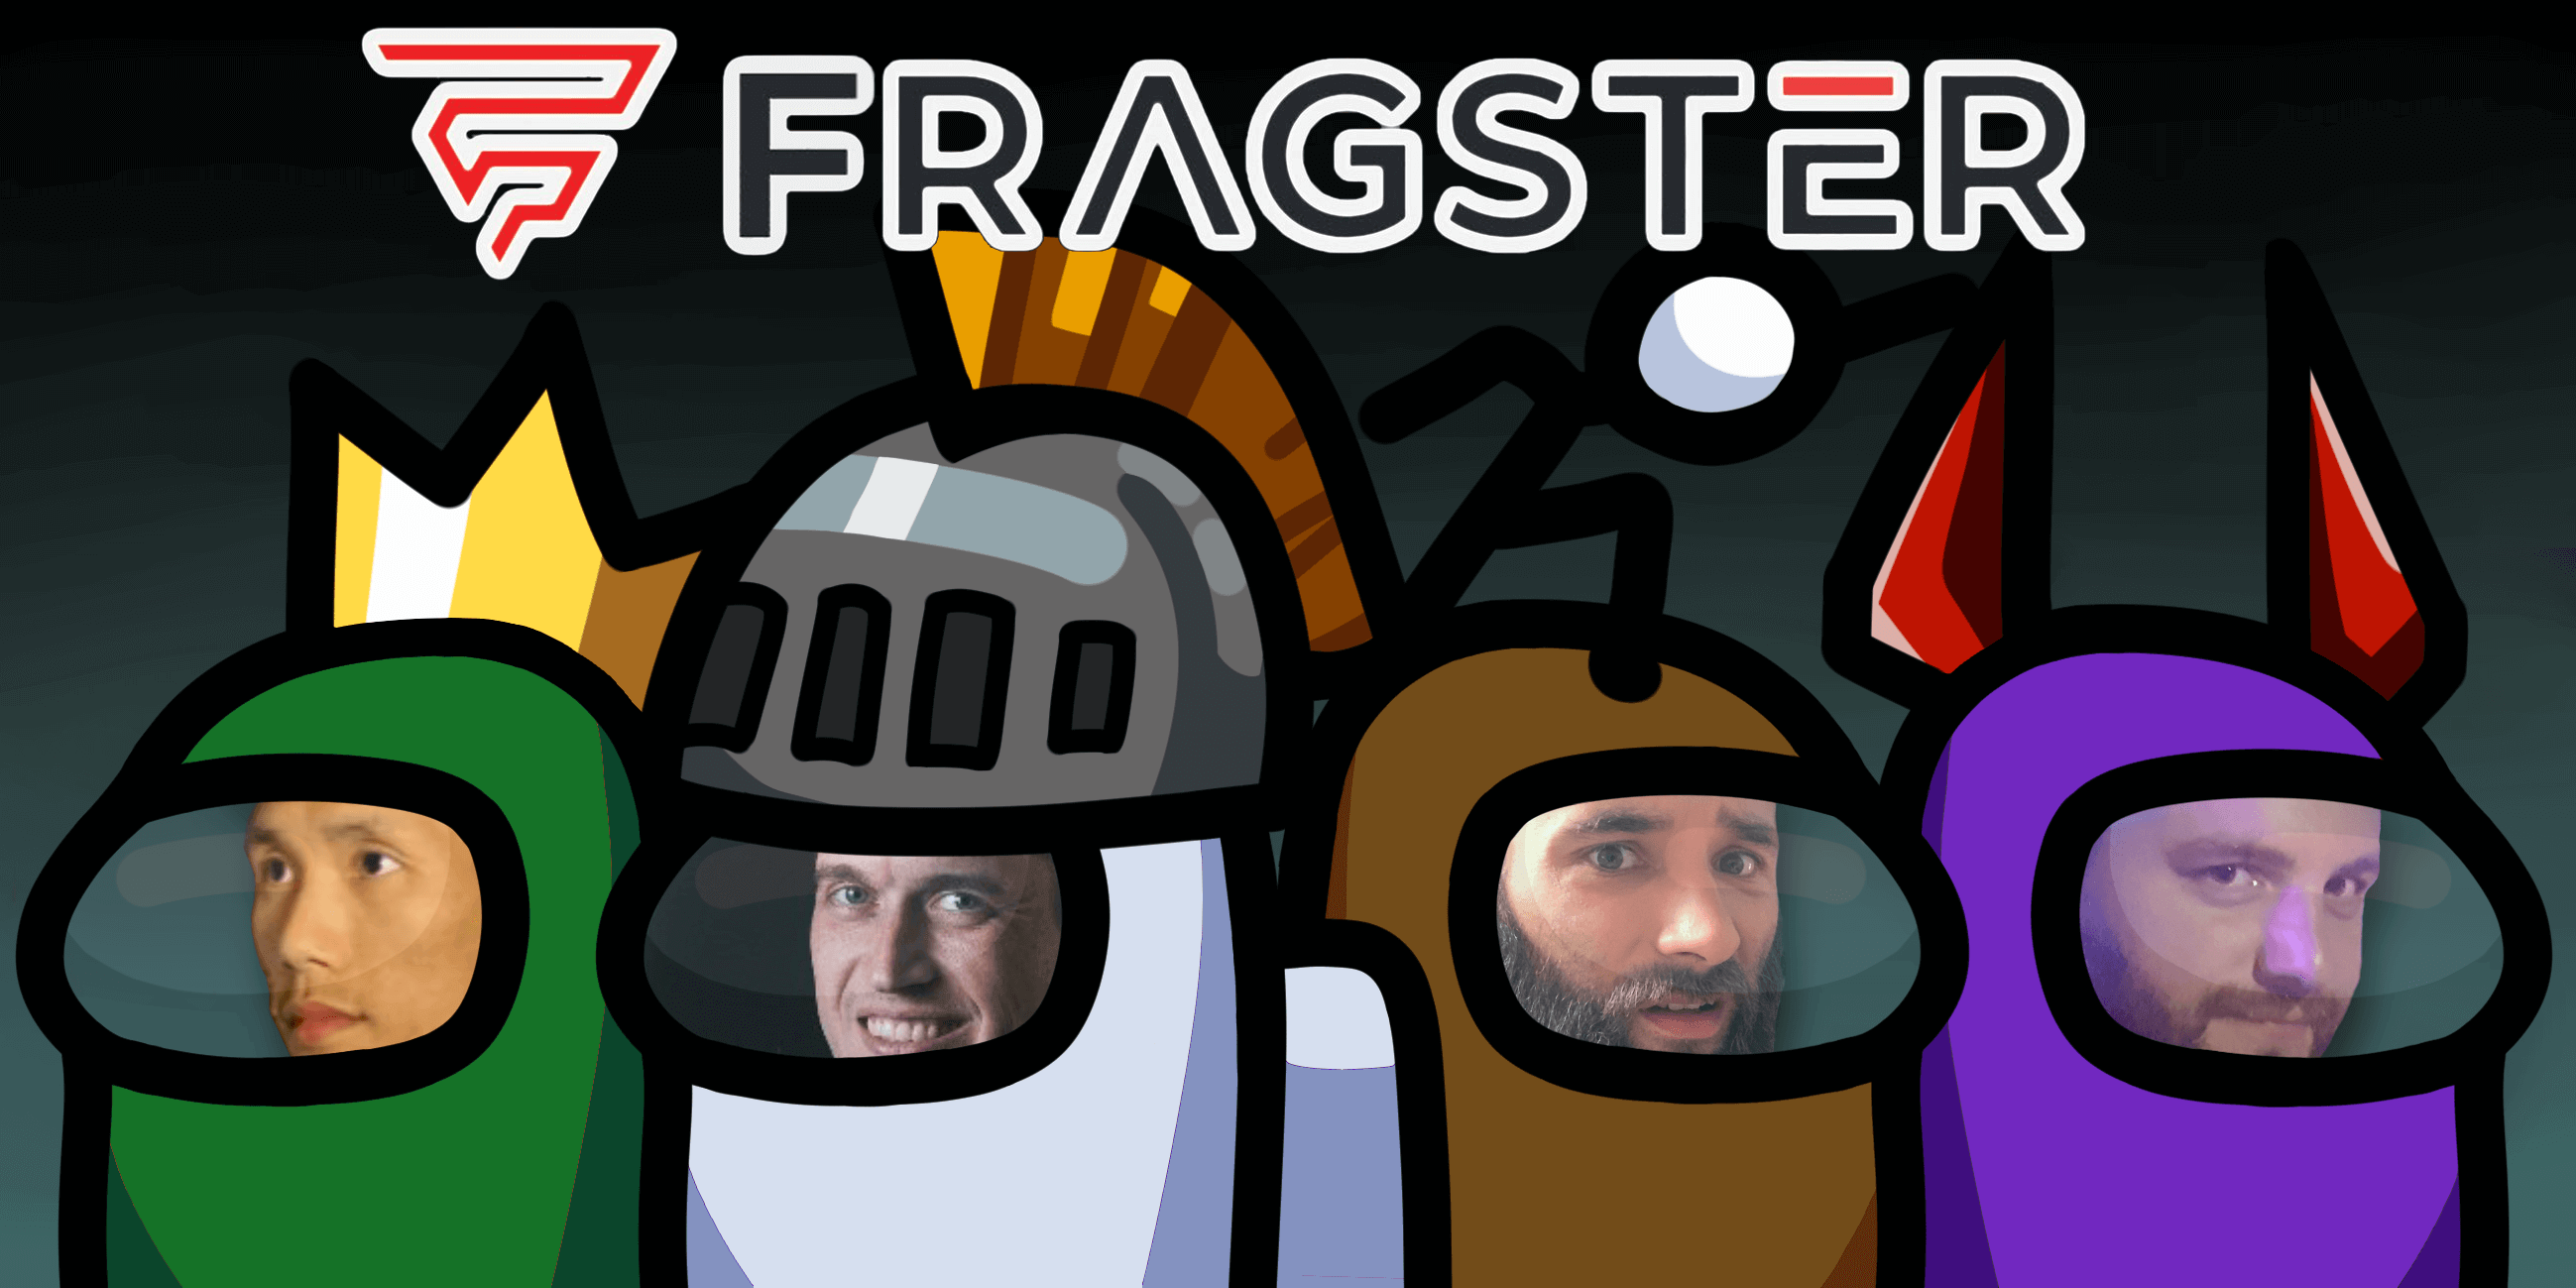 Fragster Among Us Streamer Showdown 2 